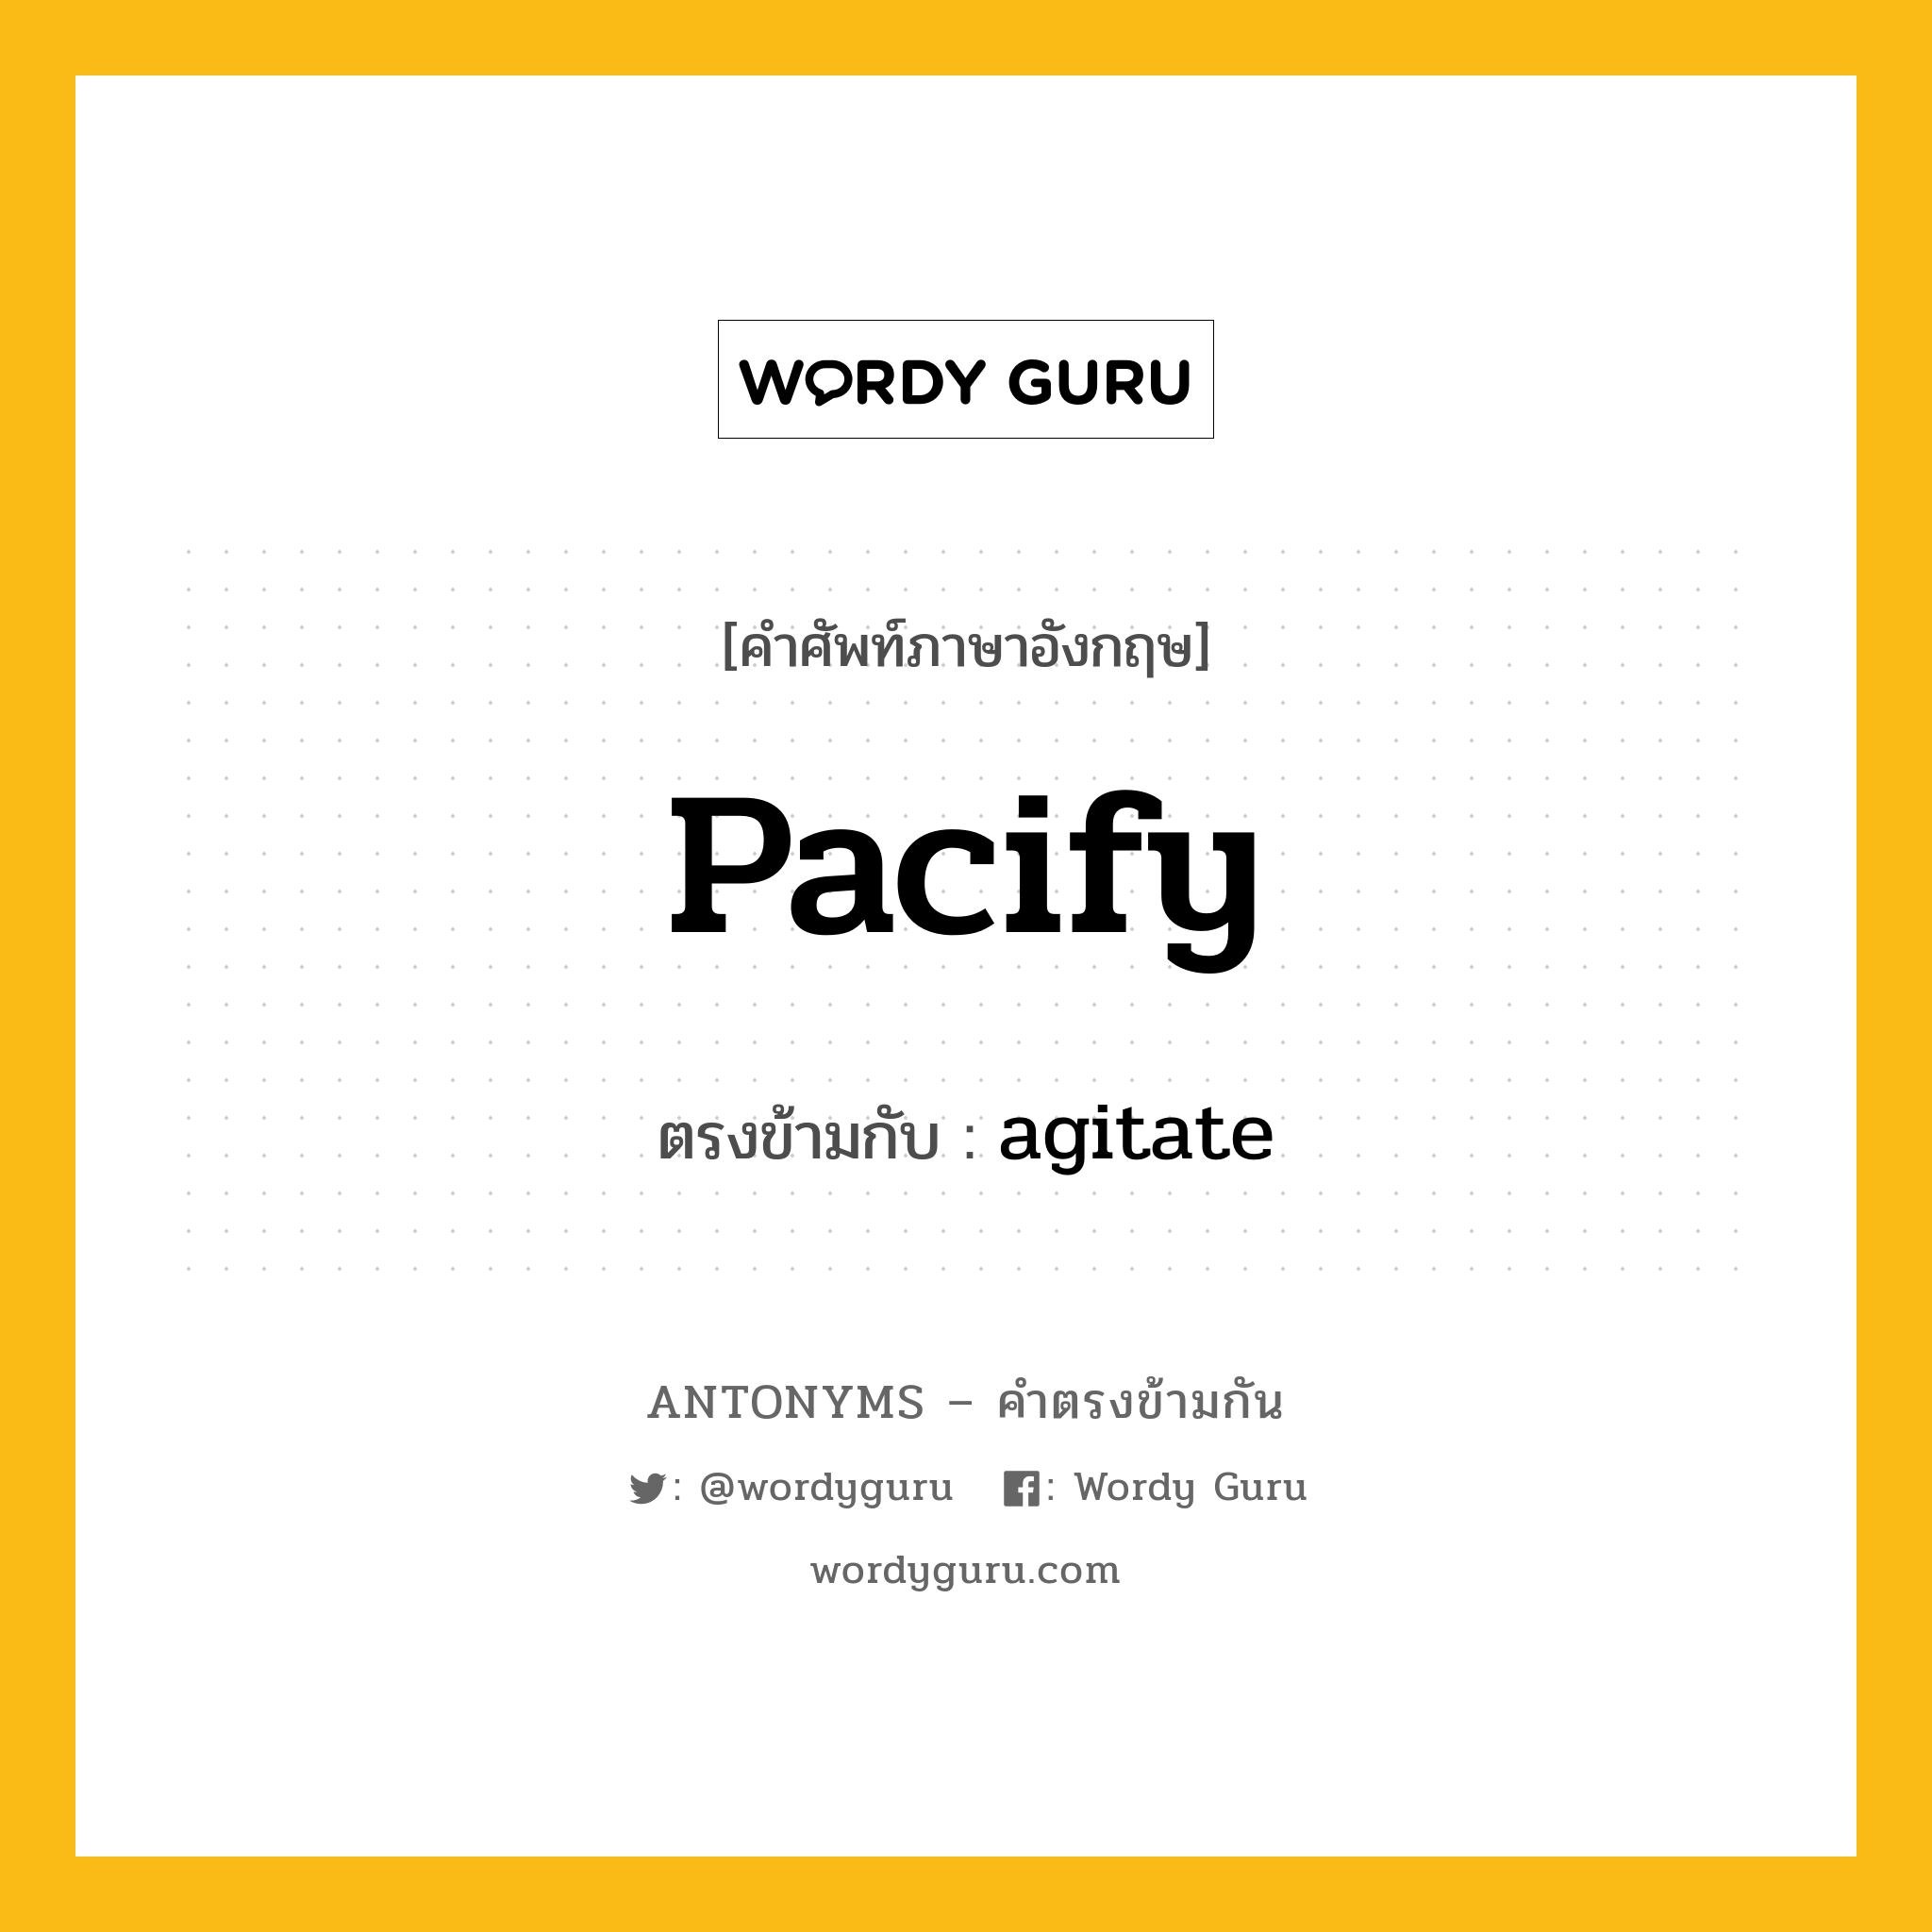 pacify เป็นคำตรงข้ามกับคำไหนบ้าง?, คำศัพท์ภาษาอังกฤษ pacify ตรงข้ามกับ agitate หมวด agitate